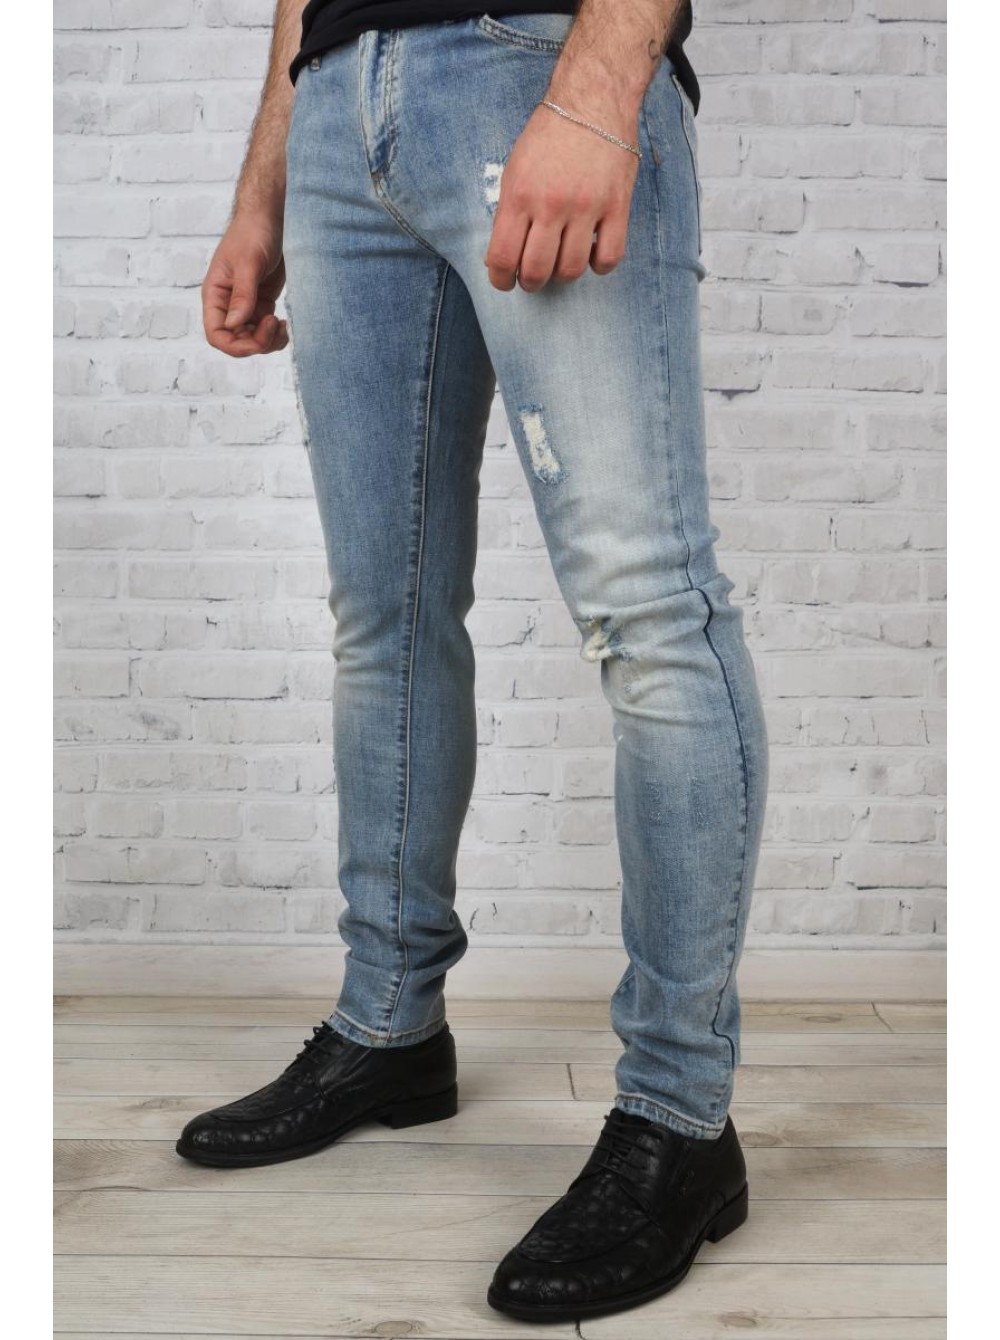 Мужские джинсы больших размеров: особенности выбора и стильные сочетания | модные новинки сезона